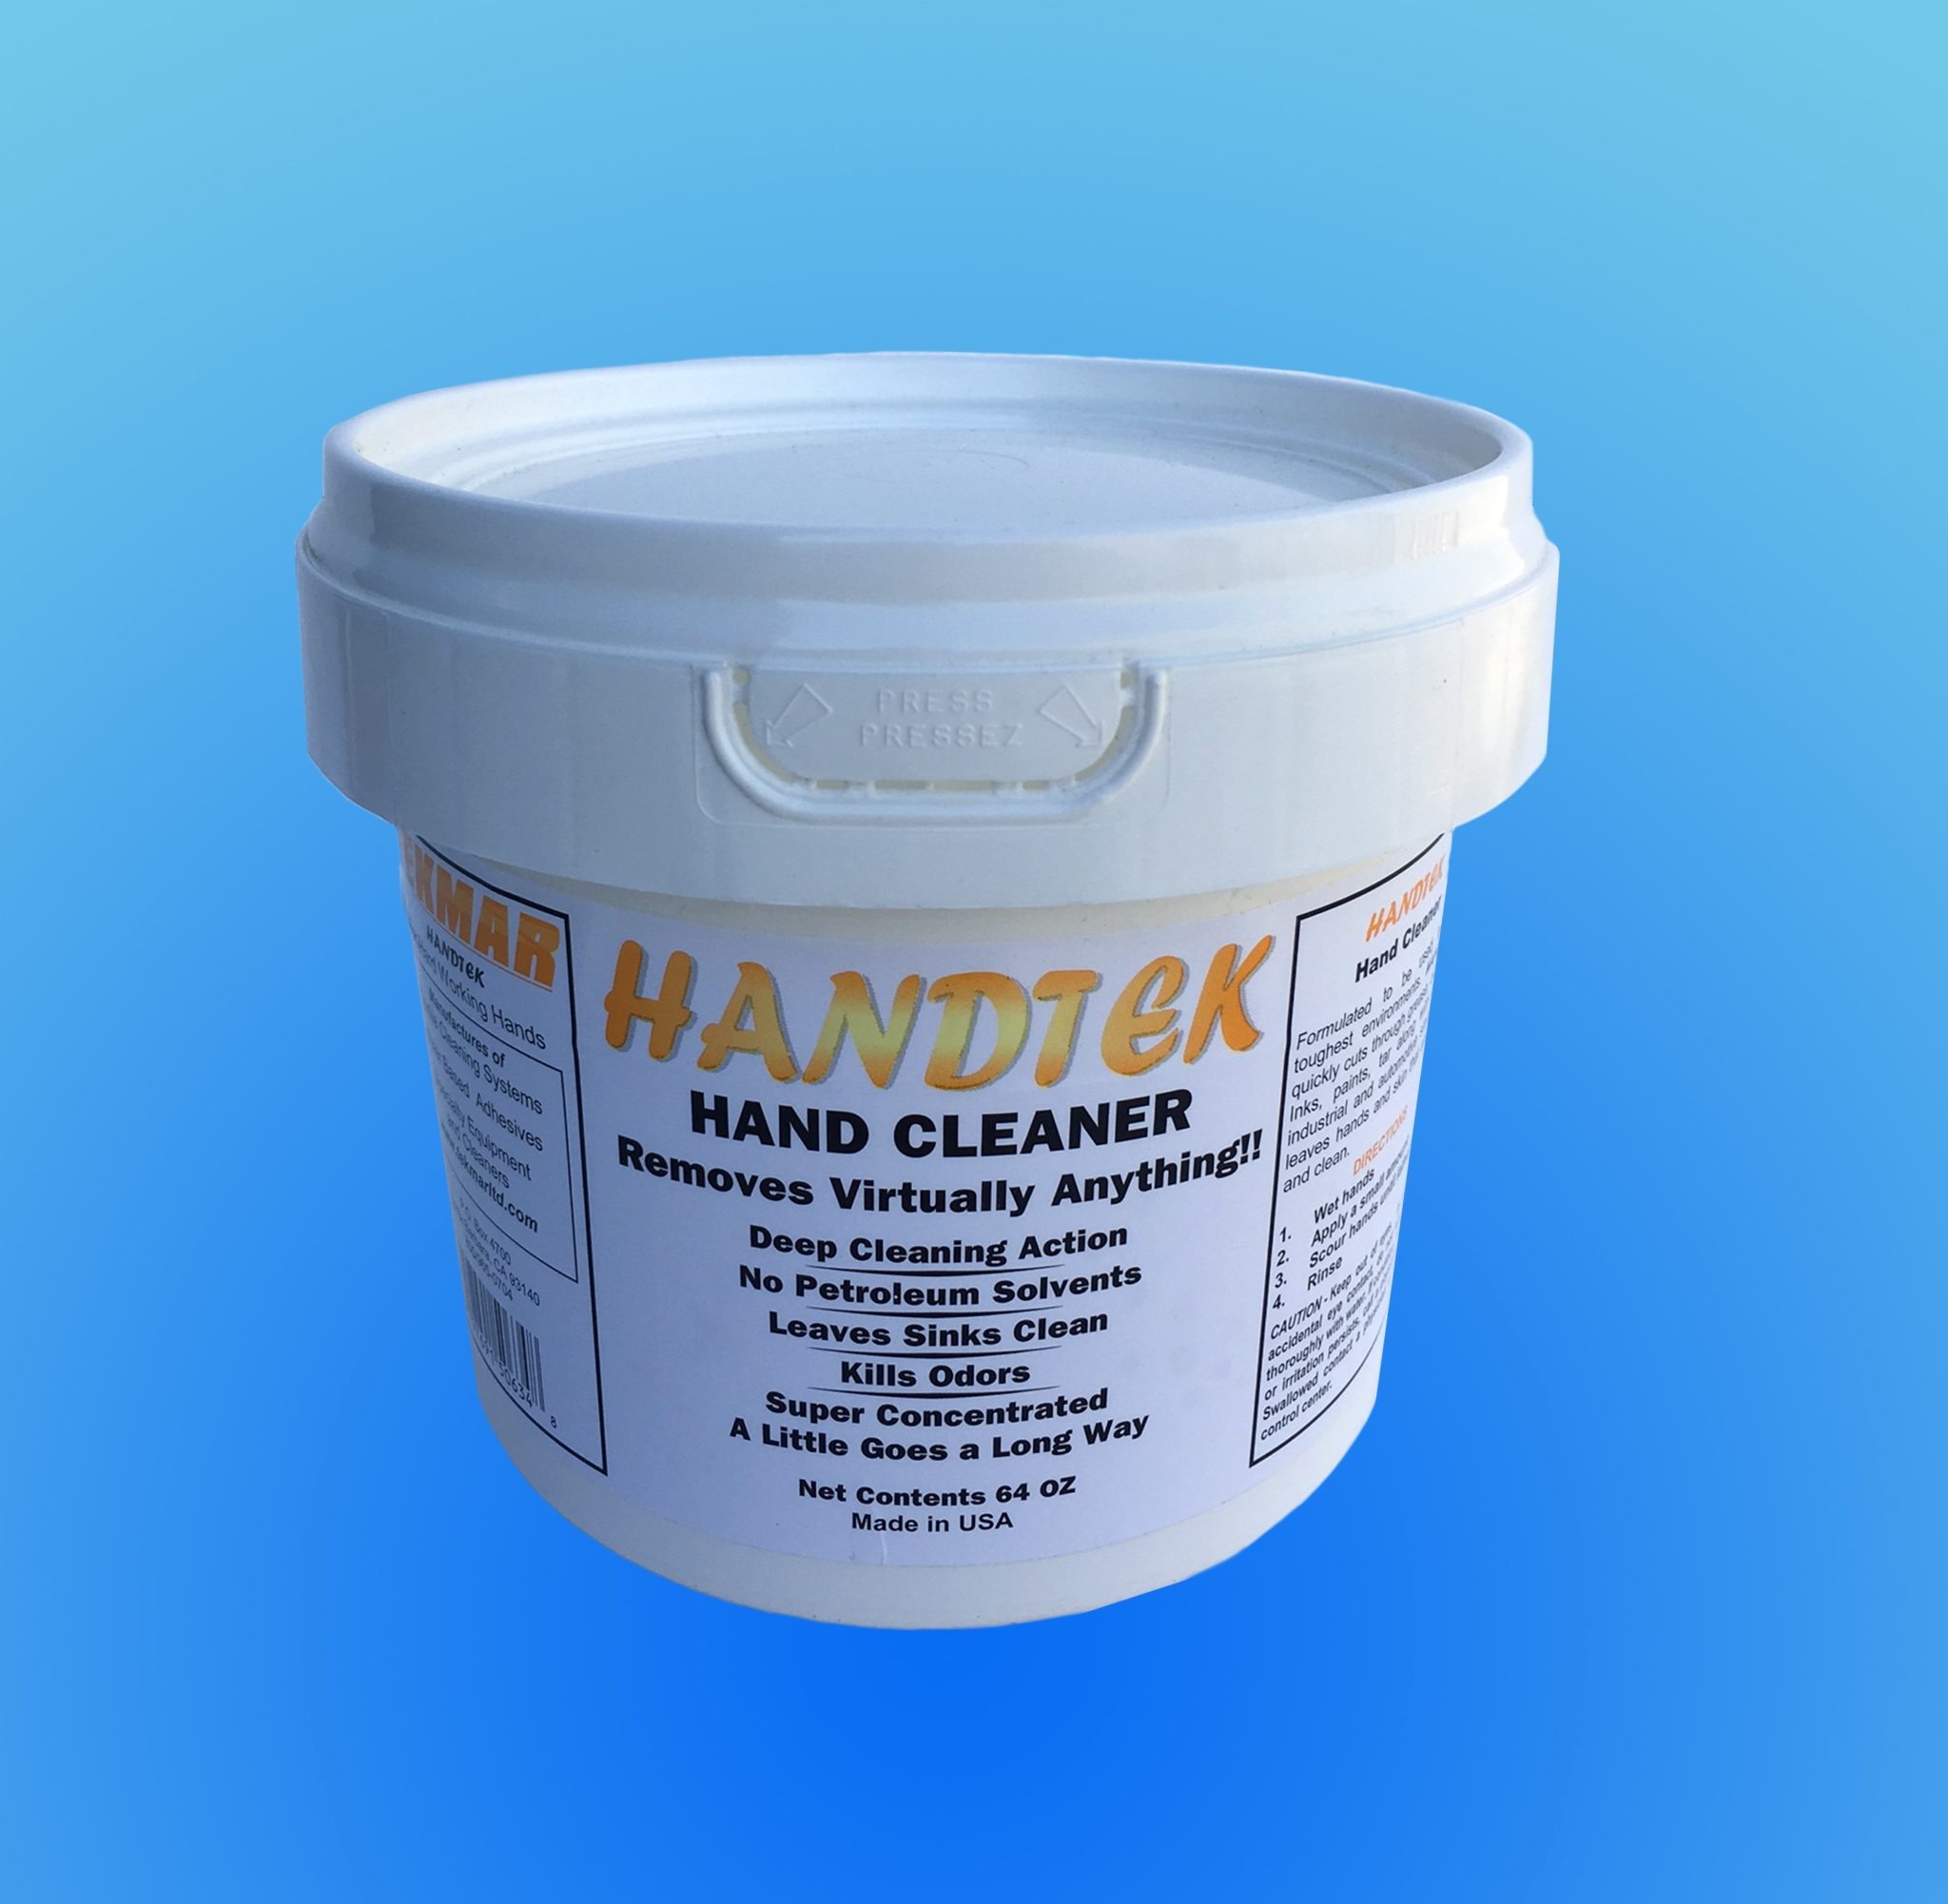 HANDTEK- Hand Cleaner